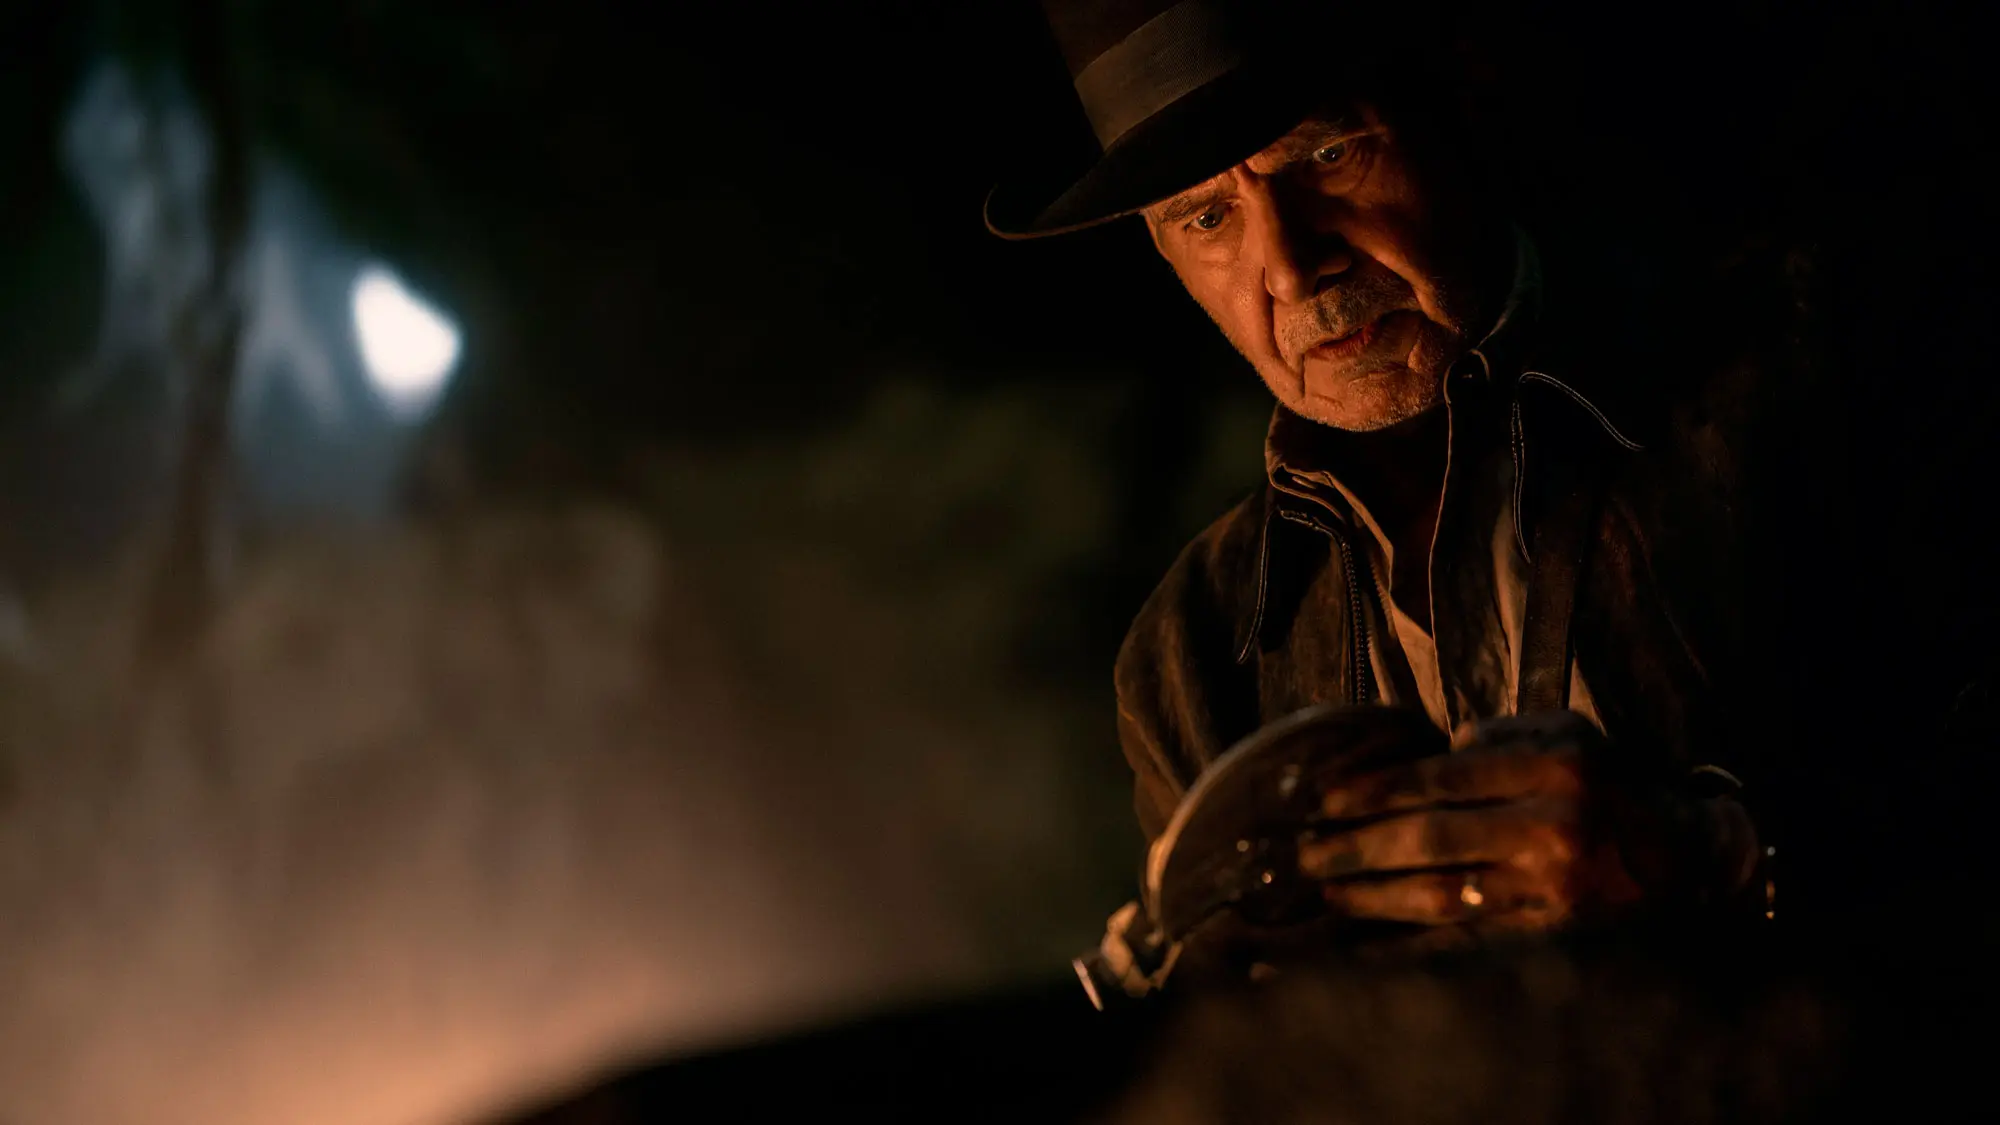 Crítica completa a Indiana Jones y el dial del destino